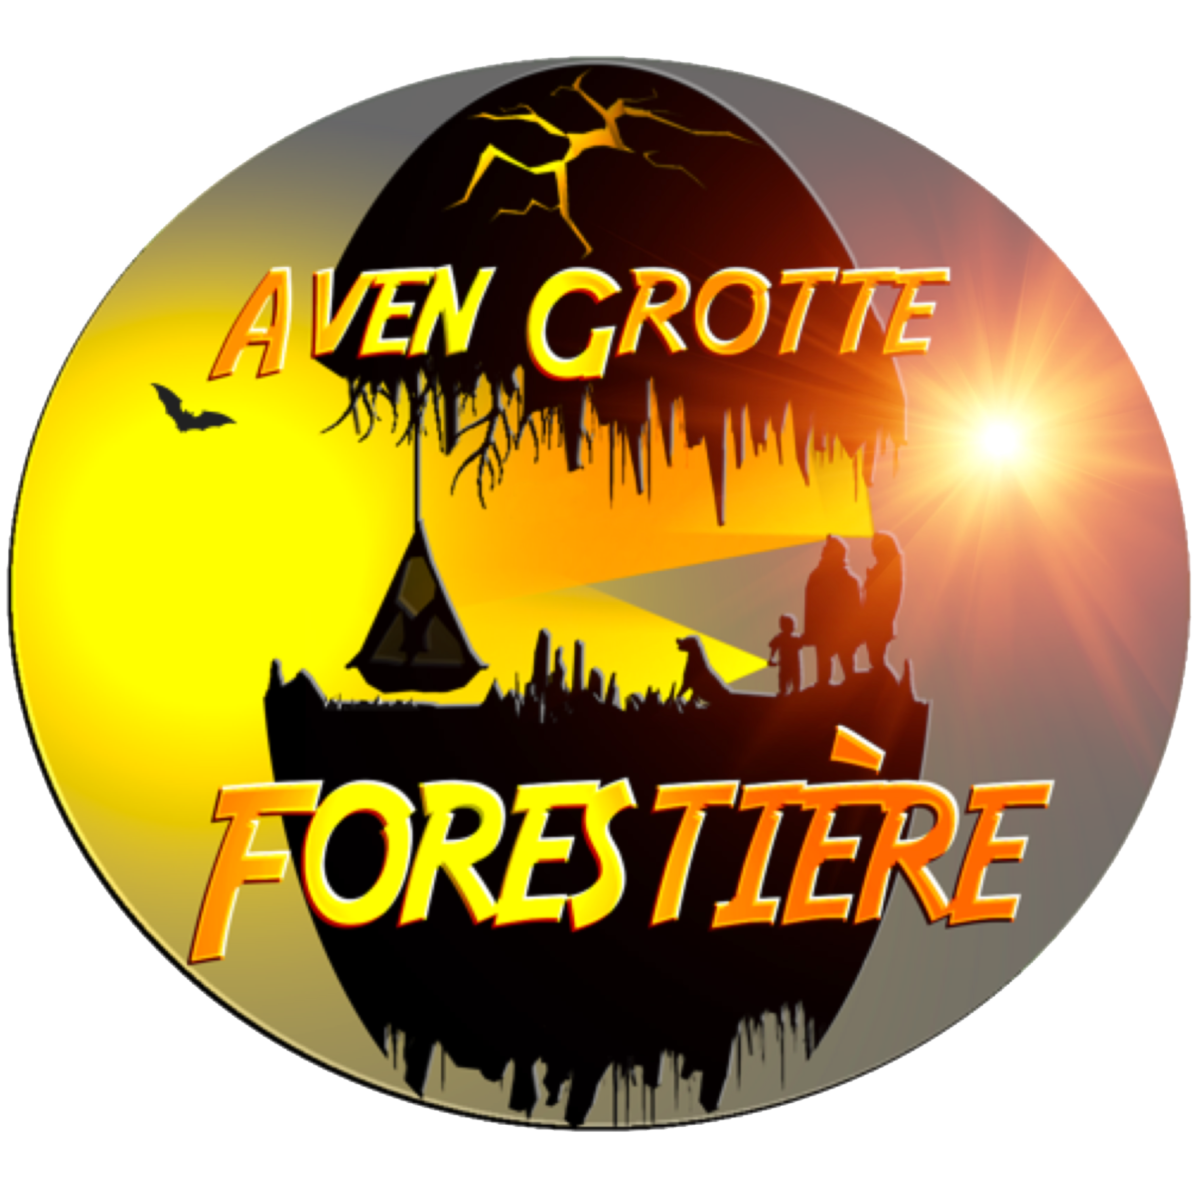 Grotte forestière logo avec soleil